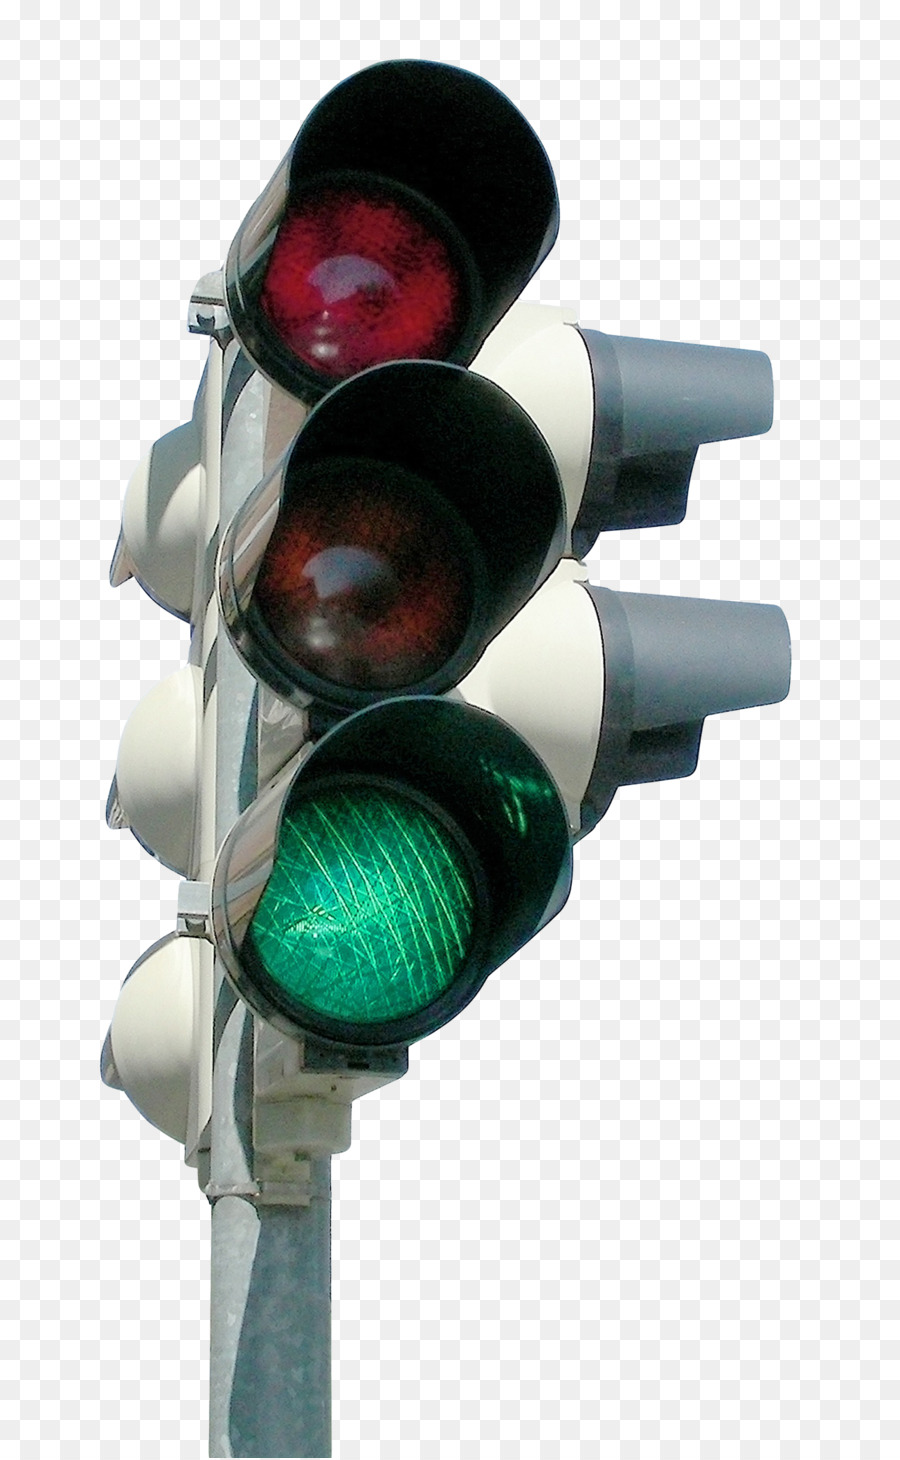 Đèn giao thông biểu tượng - đèn giao thông